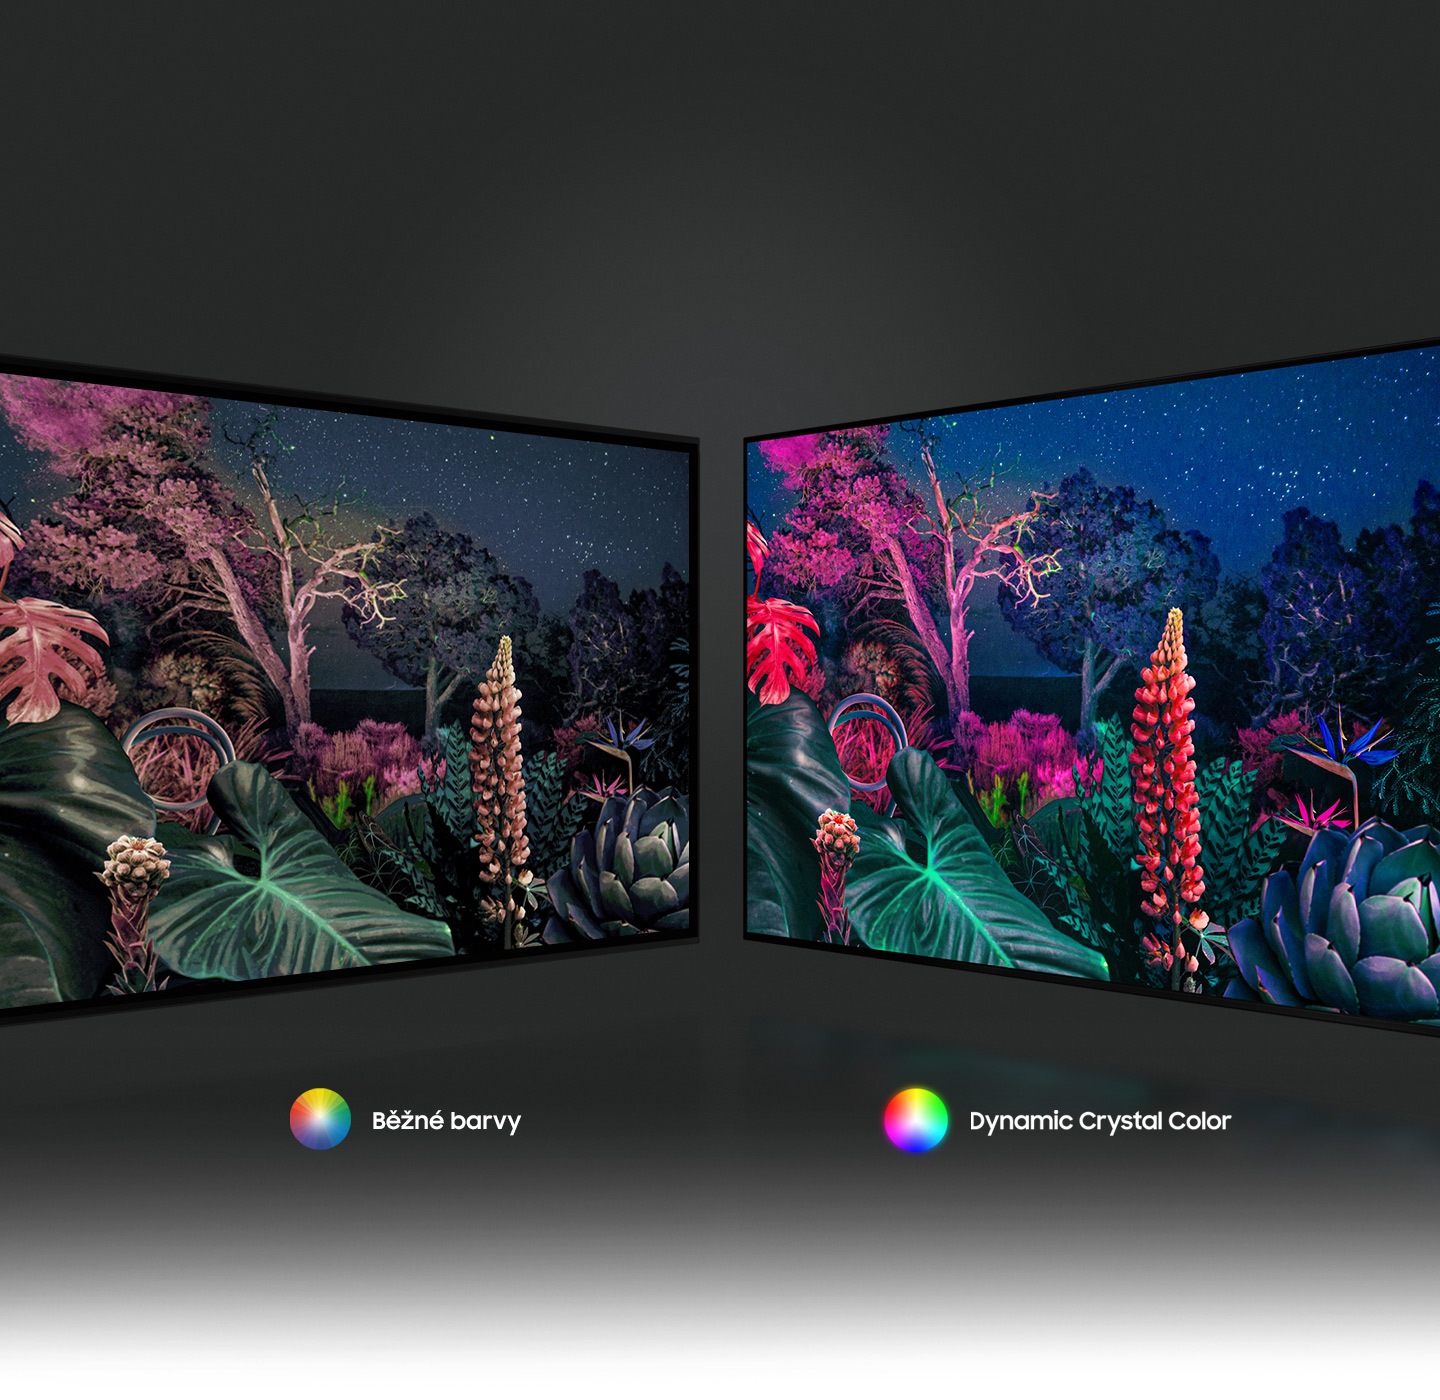 Lesní obraz vpravo ukazuje složitější barevný obraz díky technologii Dynamic Crystal Color ve srovnání s konvenčním nalevo.